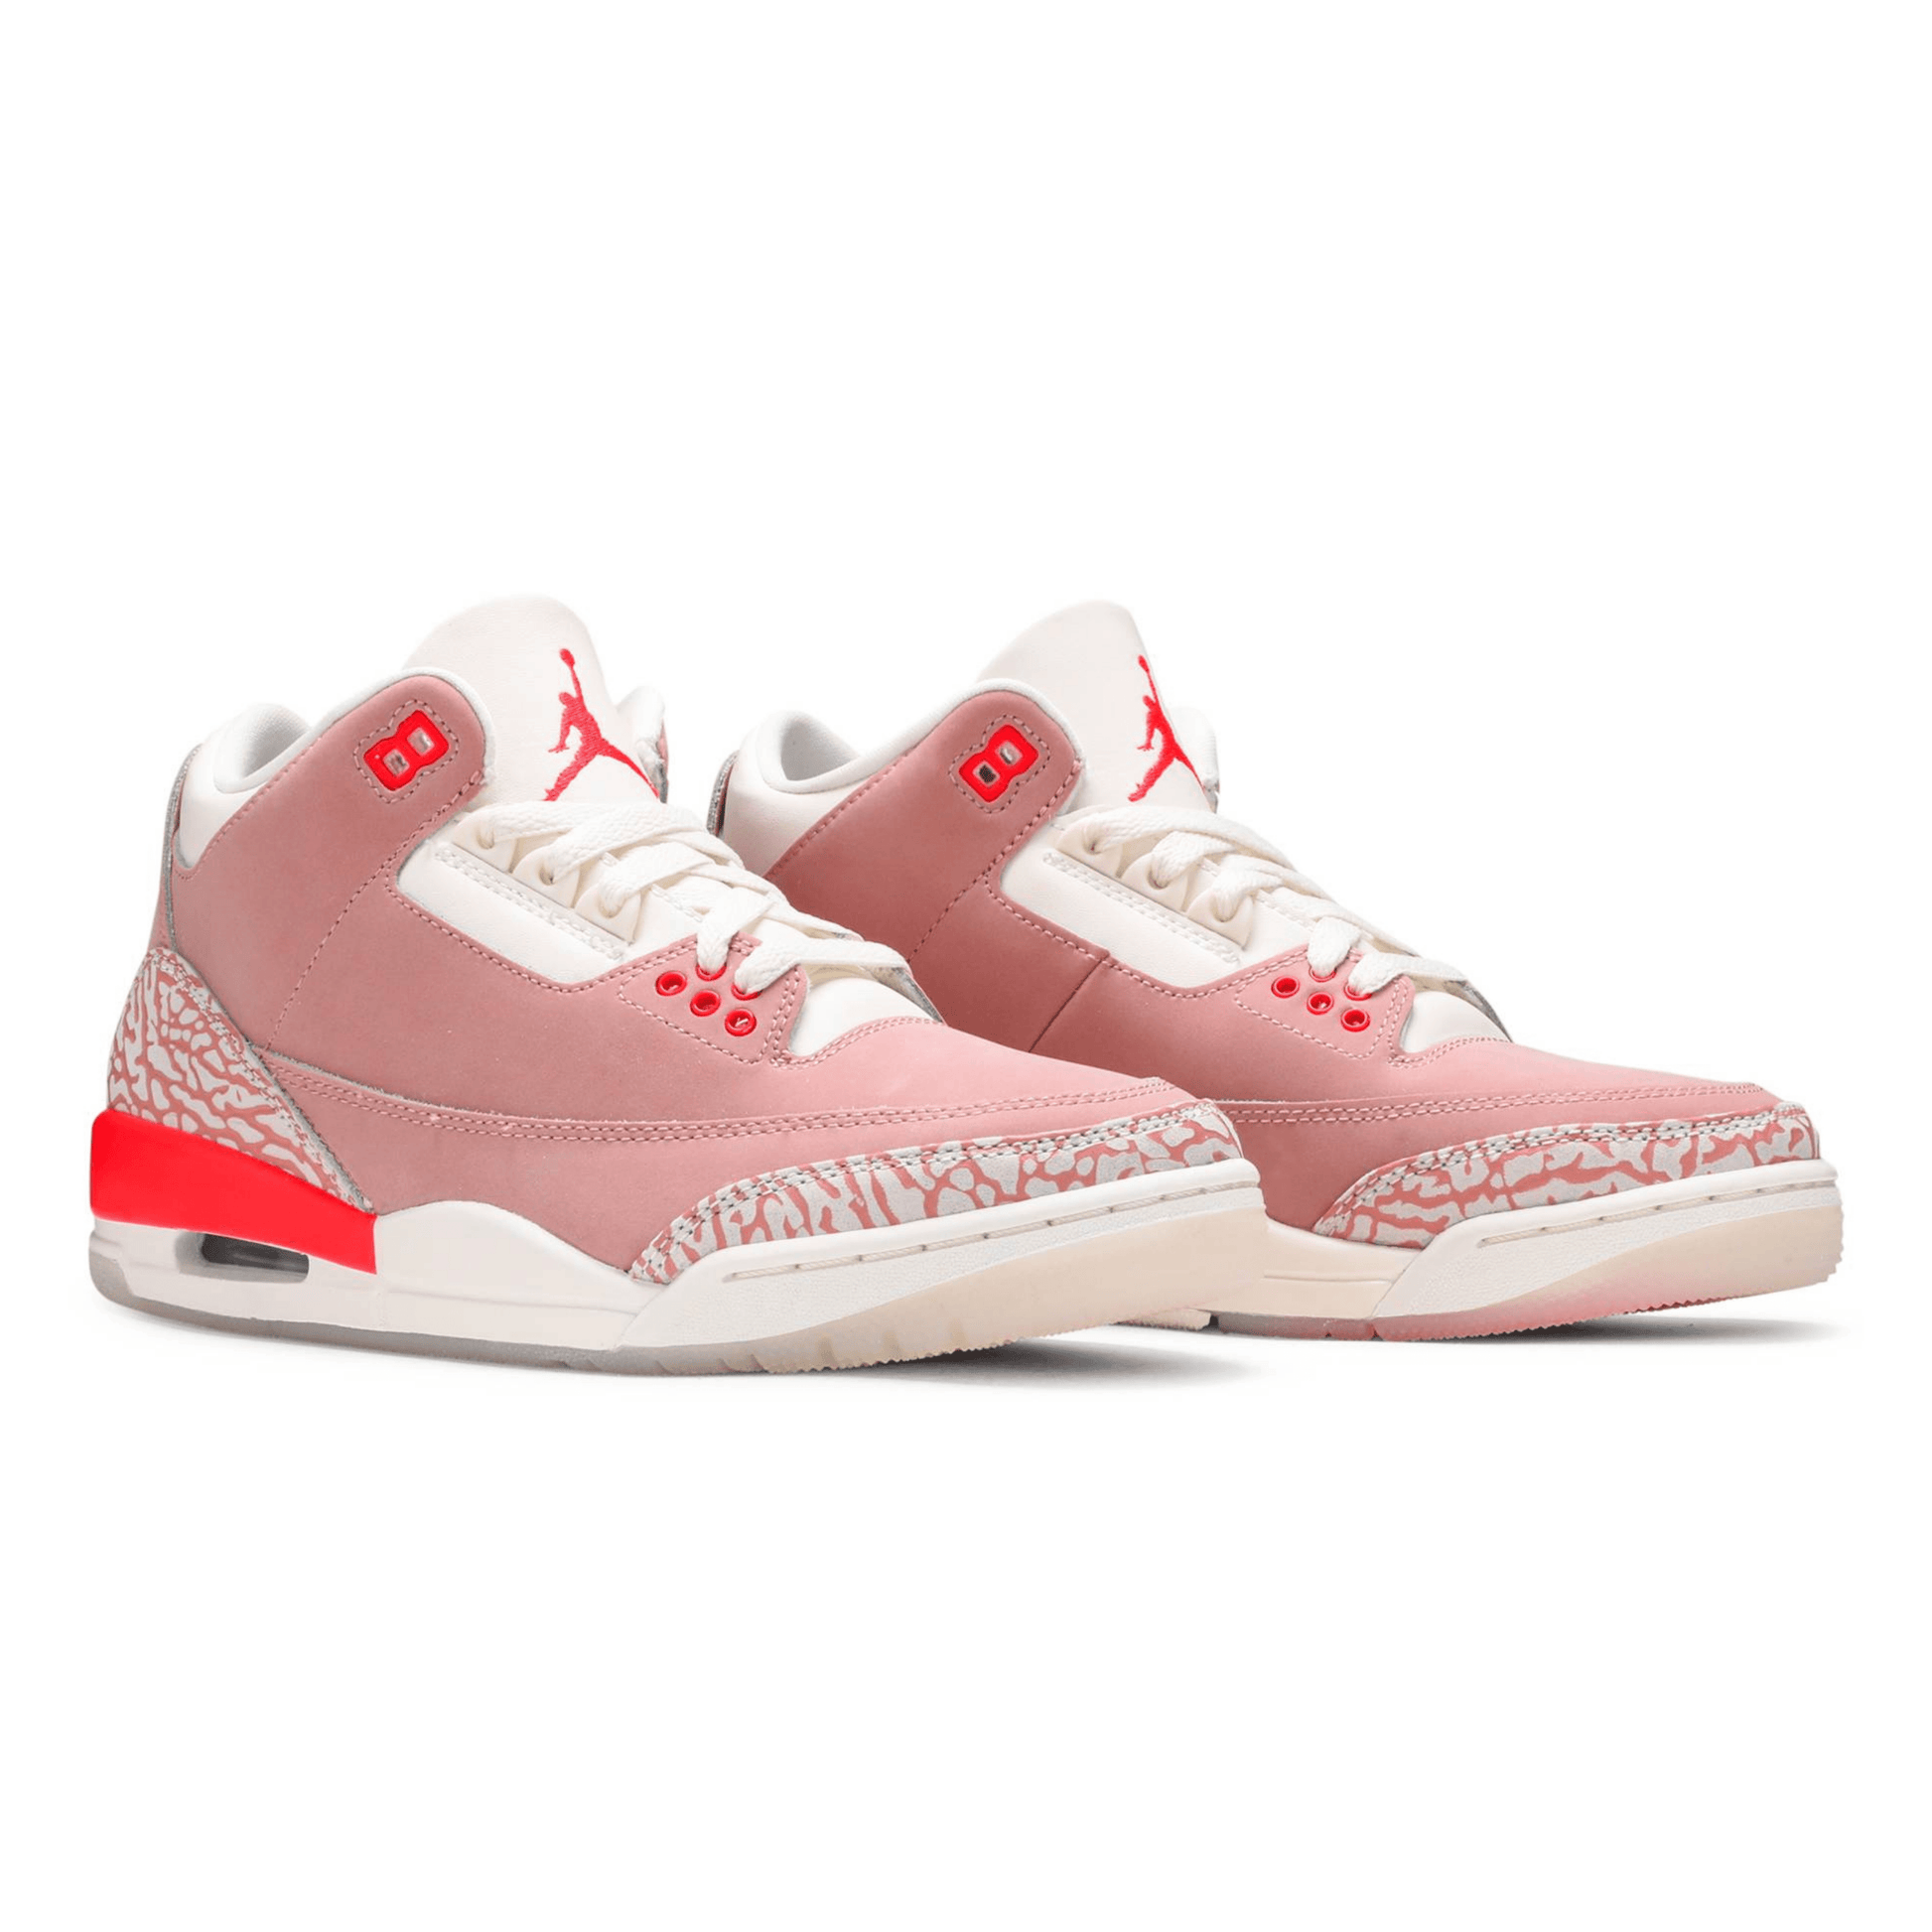 Air Jordan 3 Retro ‘Rust Pink’ WMNS - FRESNEAKERS